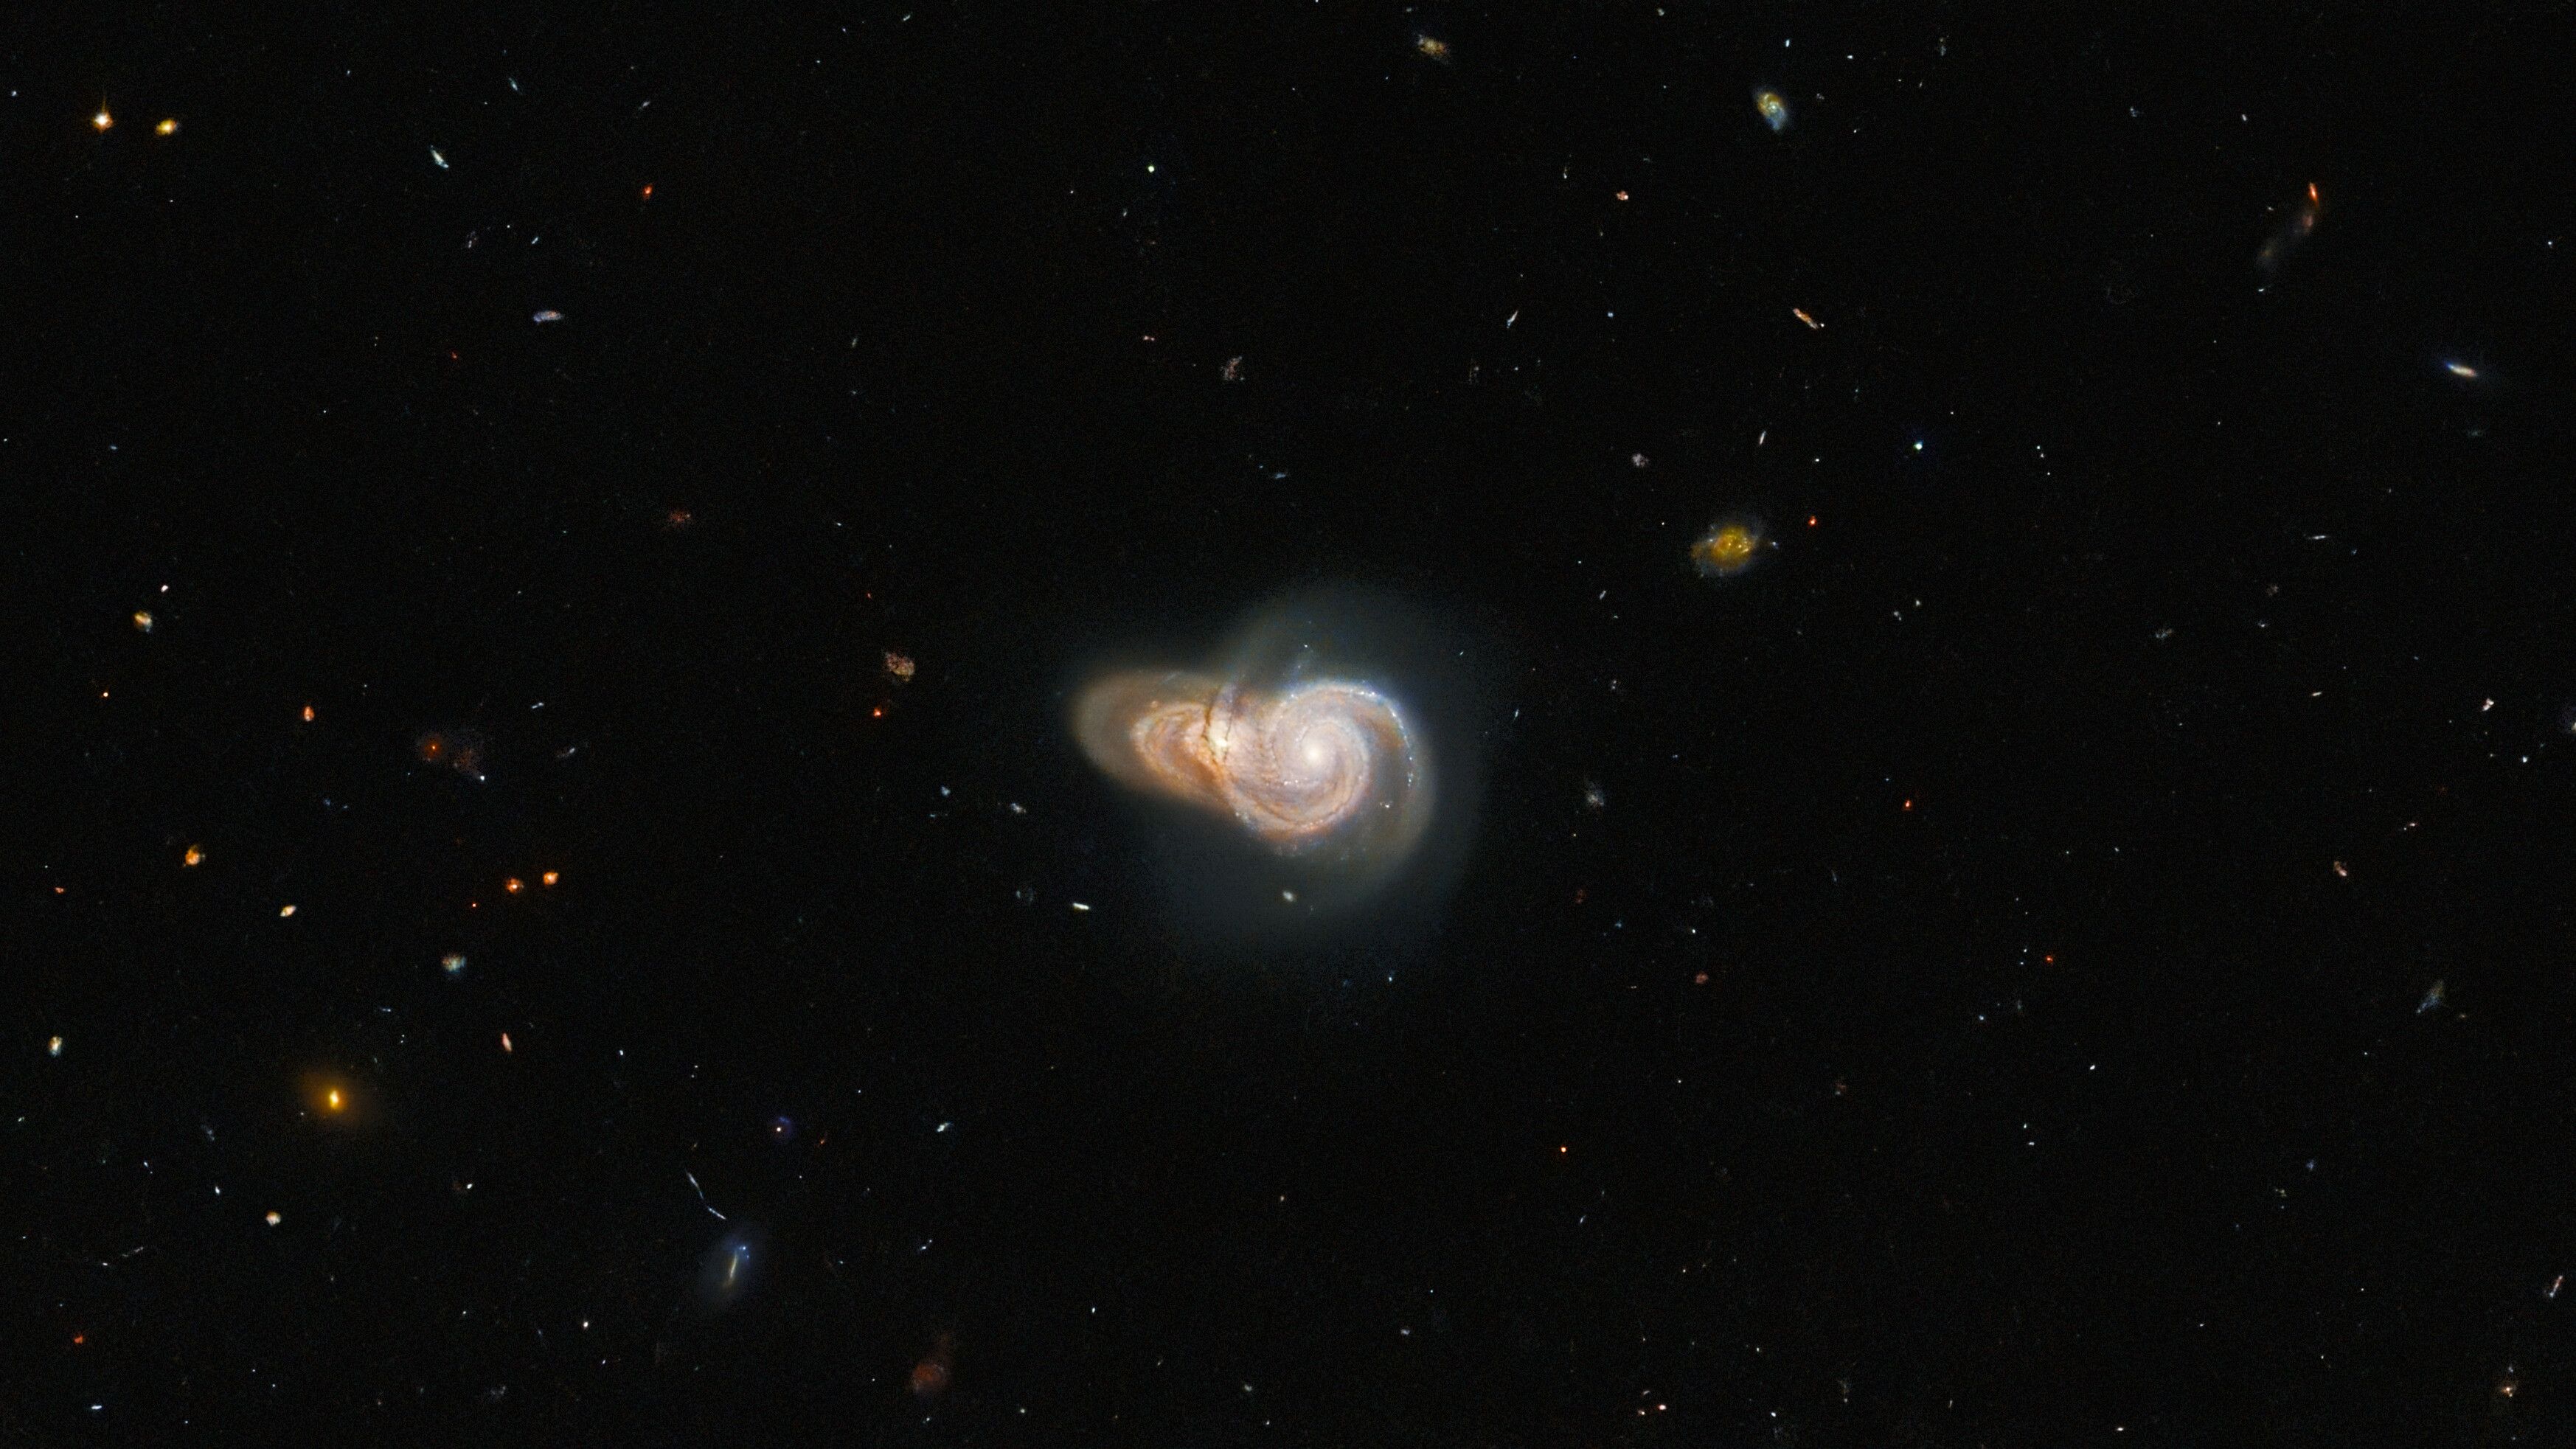 nouvelle image hubble de deux galaxies spirales qui se chevauchent